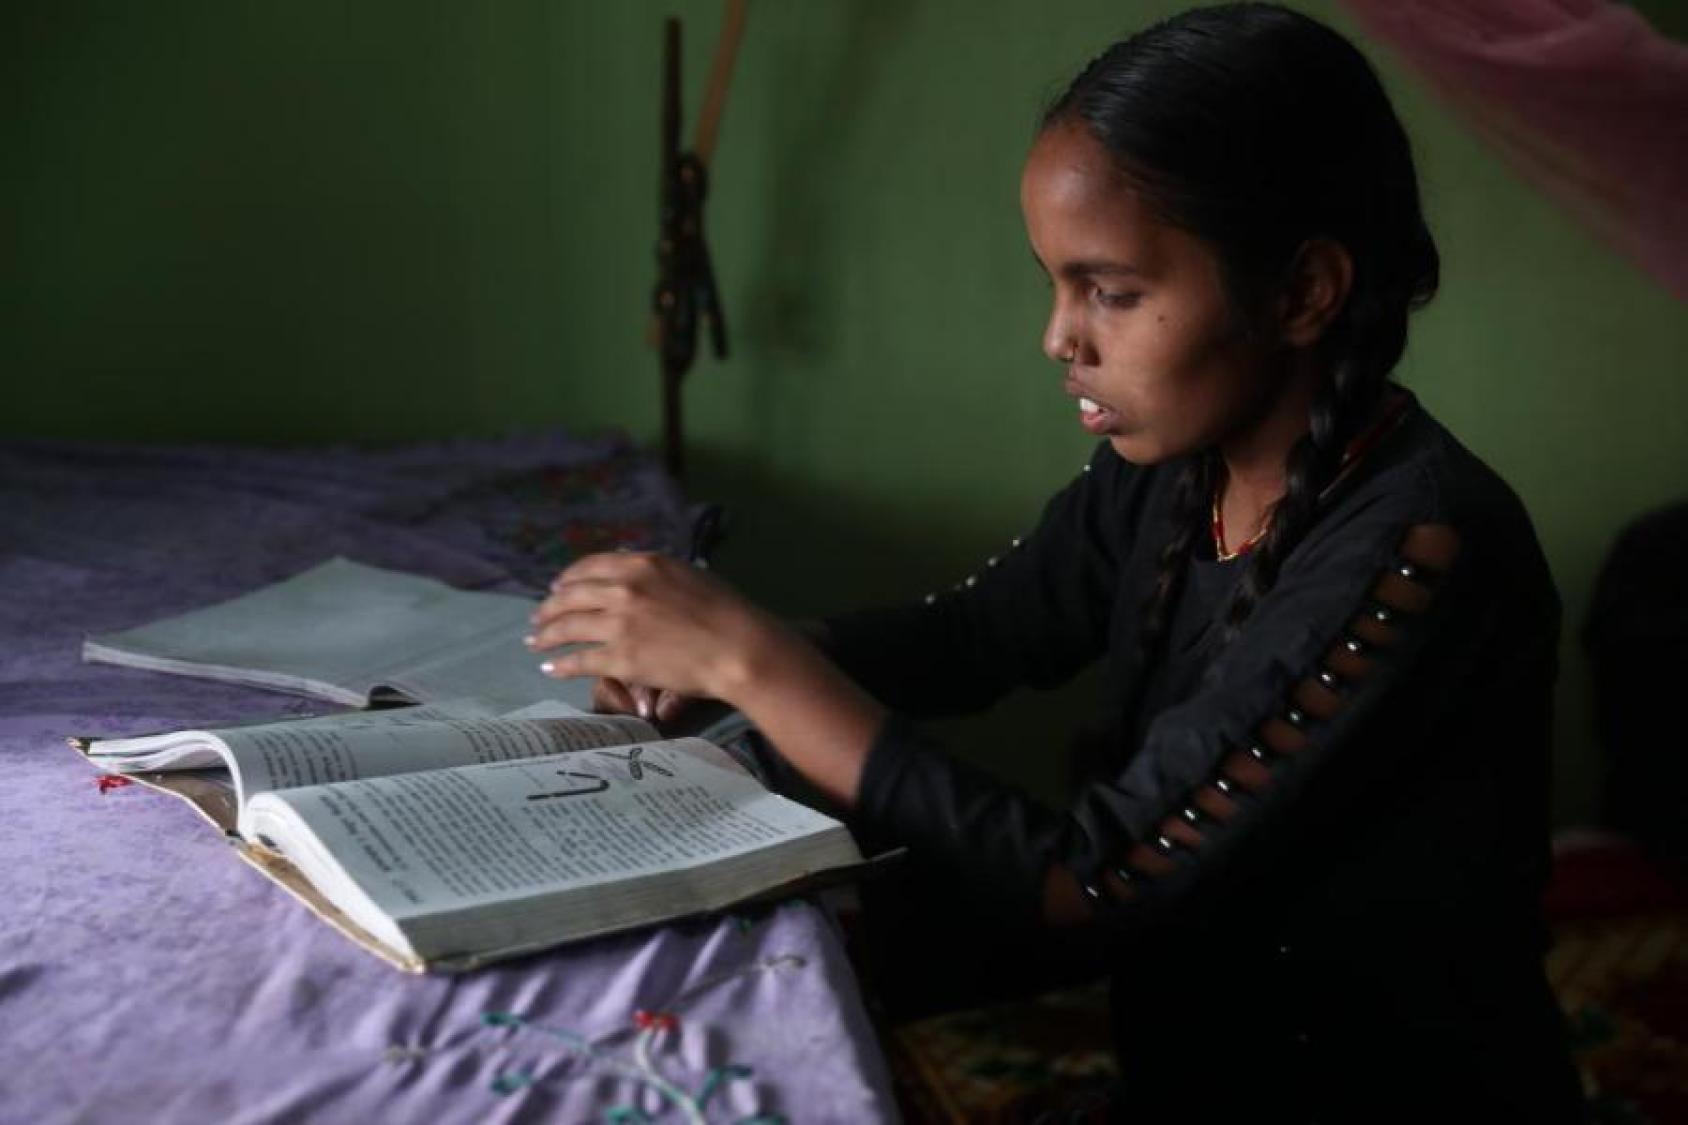 Una niña observa sus libros, los cuales están sobre una mesa con un mantel morado.